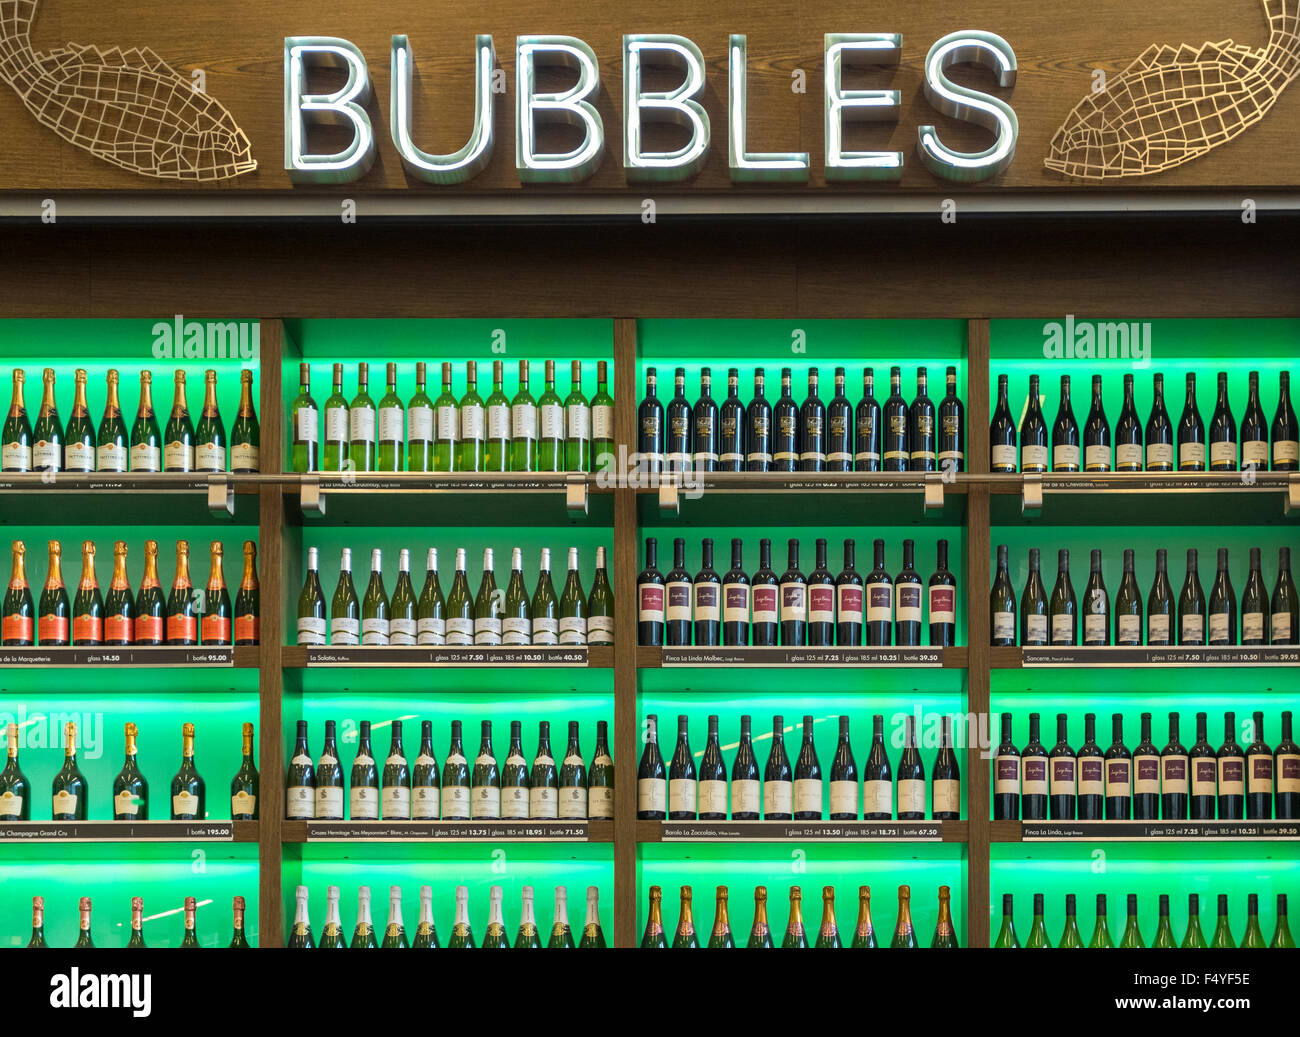 Luftblasen, Austern- und Weinbar. Flaschen Wein auf dem Display. Amsterdam Schiphol Flughafen. Stockfoto